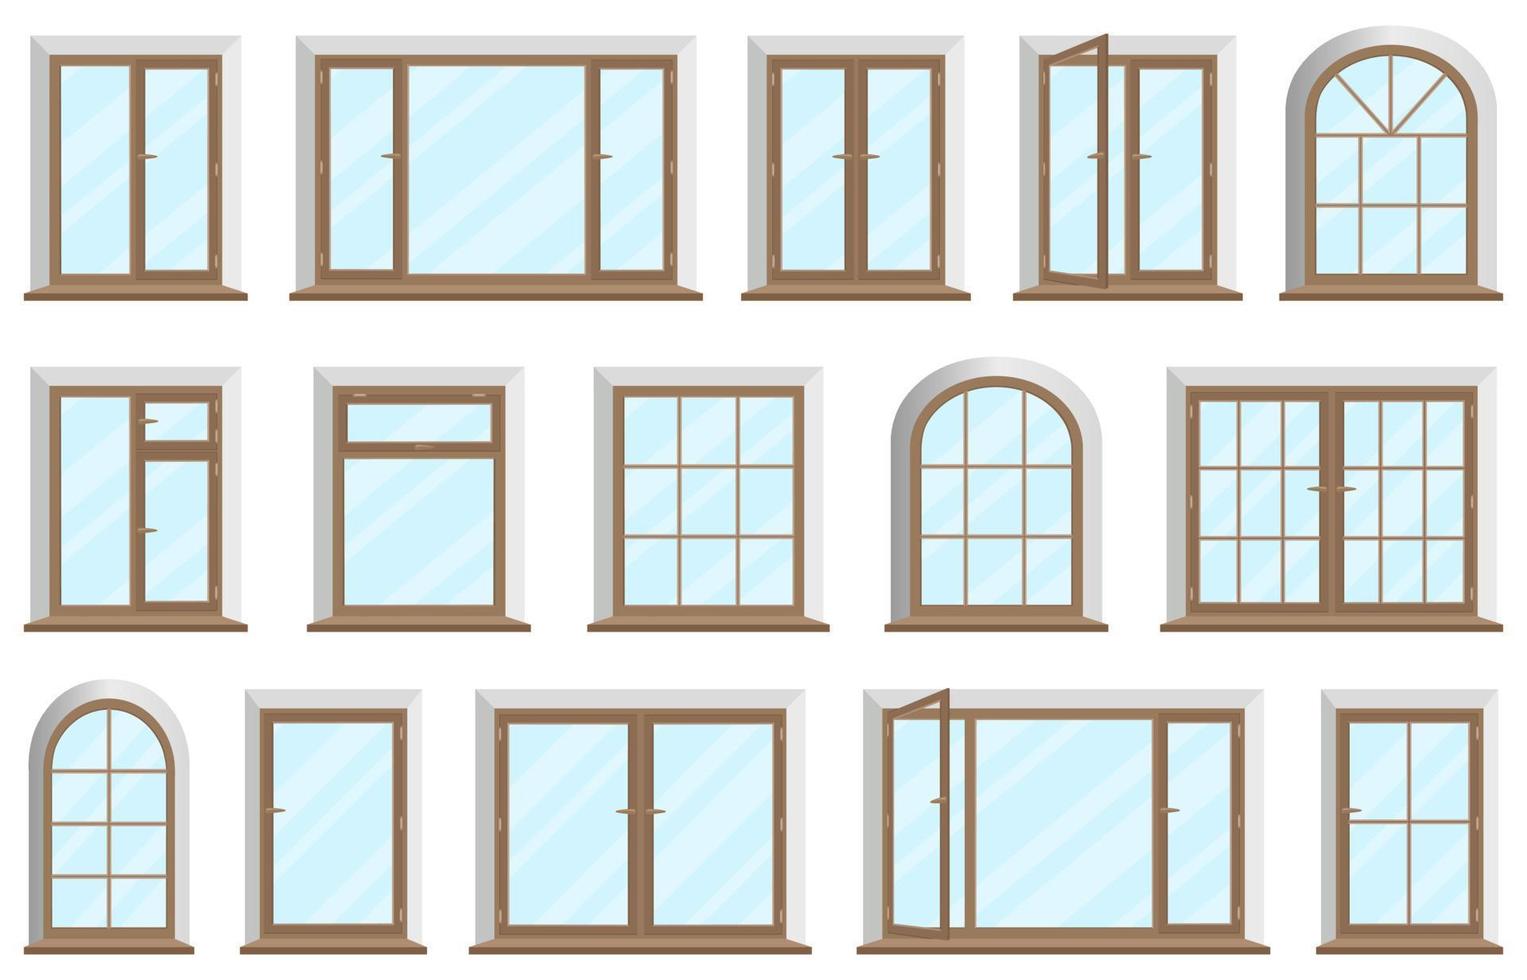 trä- och plast windows.set av fönster och ramar för Hem eller kontor med transparent glas.trä och PVC material för design element.platt vektor illustration.